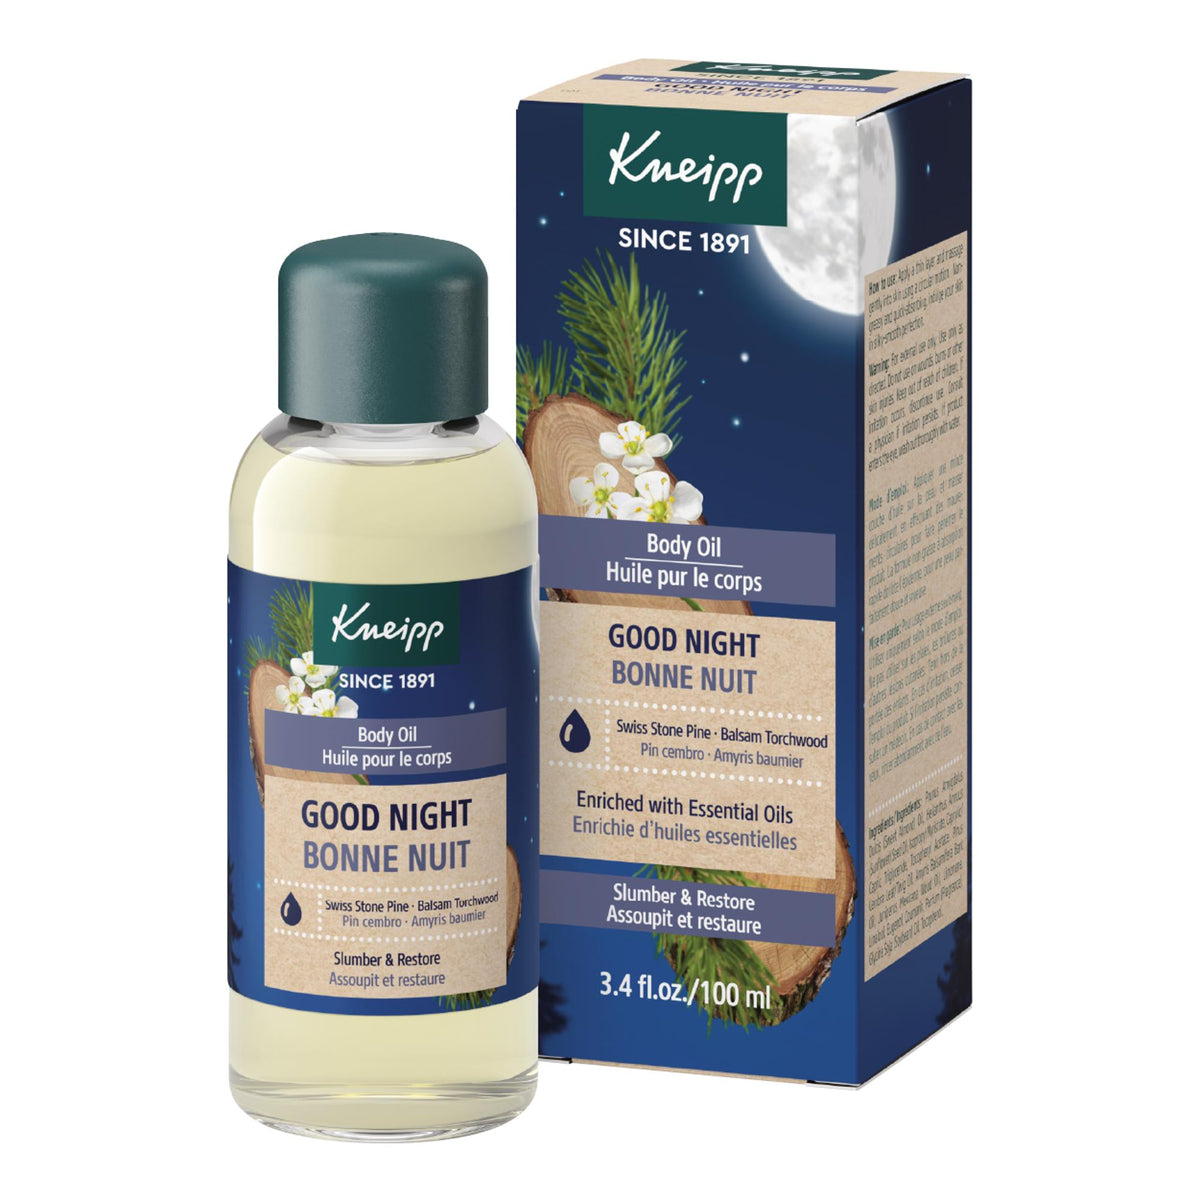 Kneipp Body Oil, Good Night Swiss Stone Pine & Balsam Torchwood, 3.4 fl oz